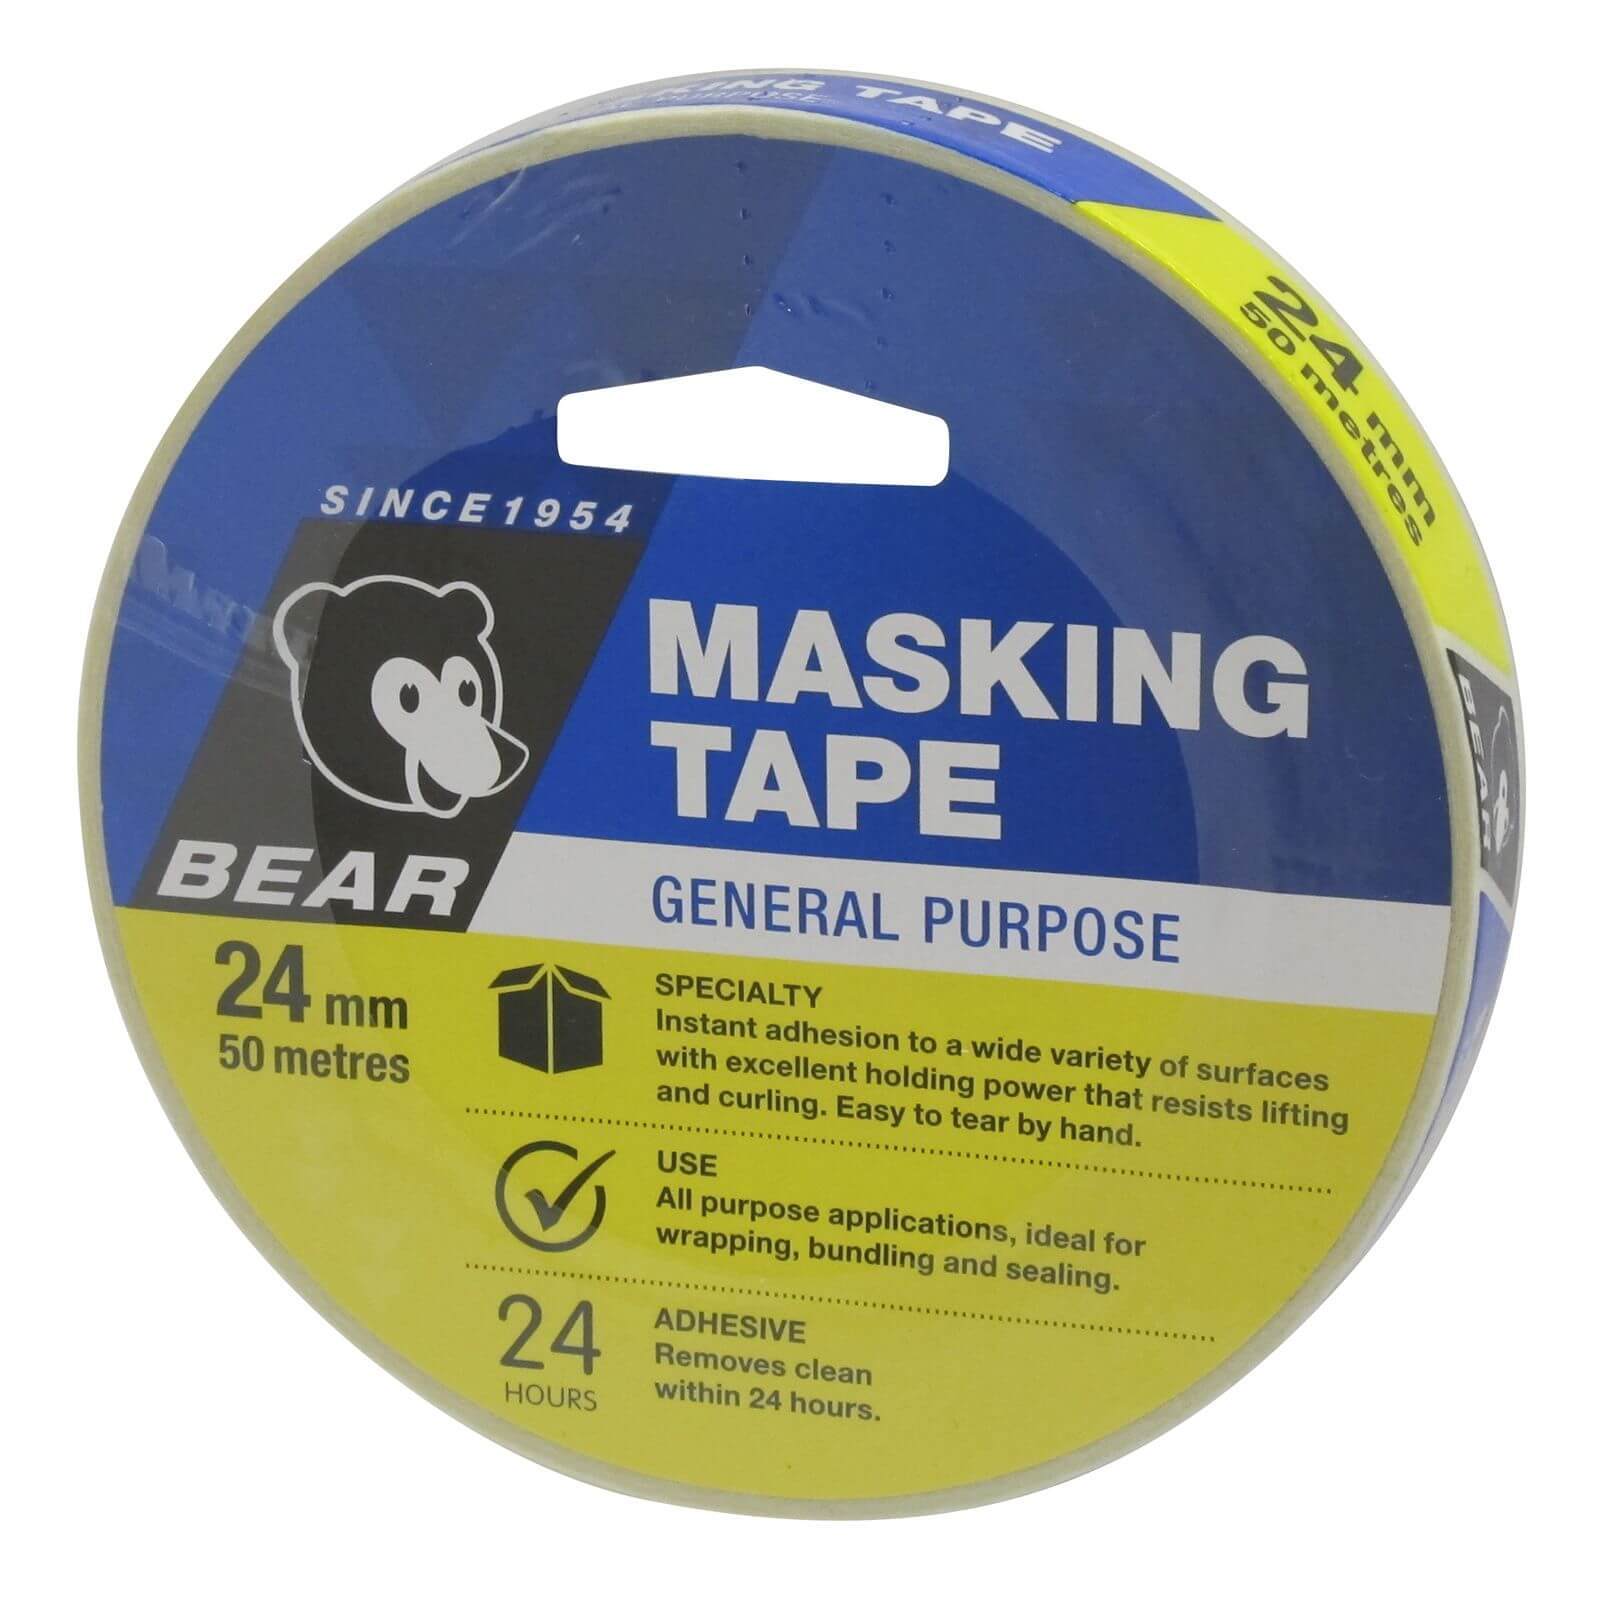 Bear 24mm x 50m General Purpose Masking Tape